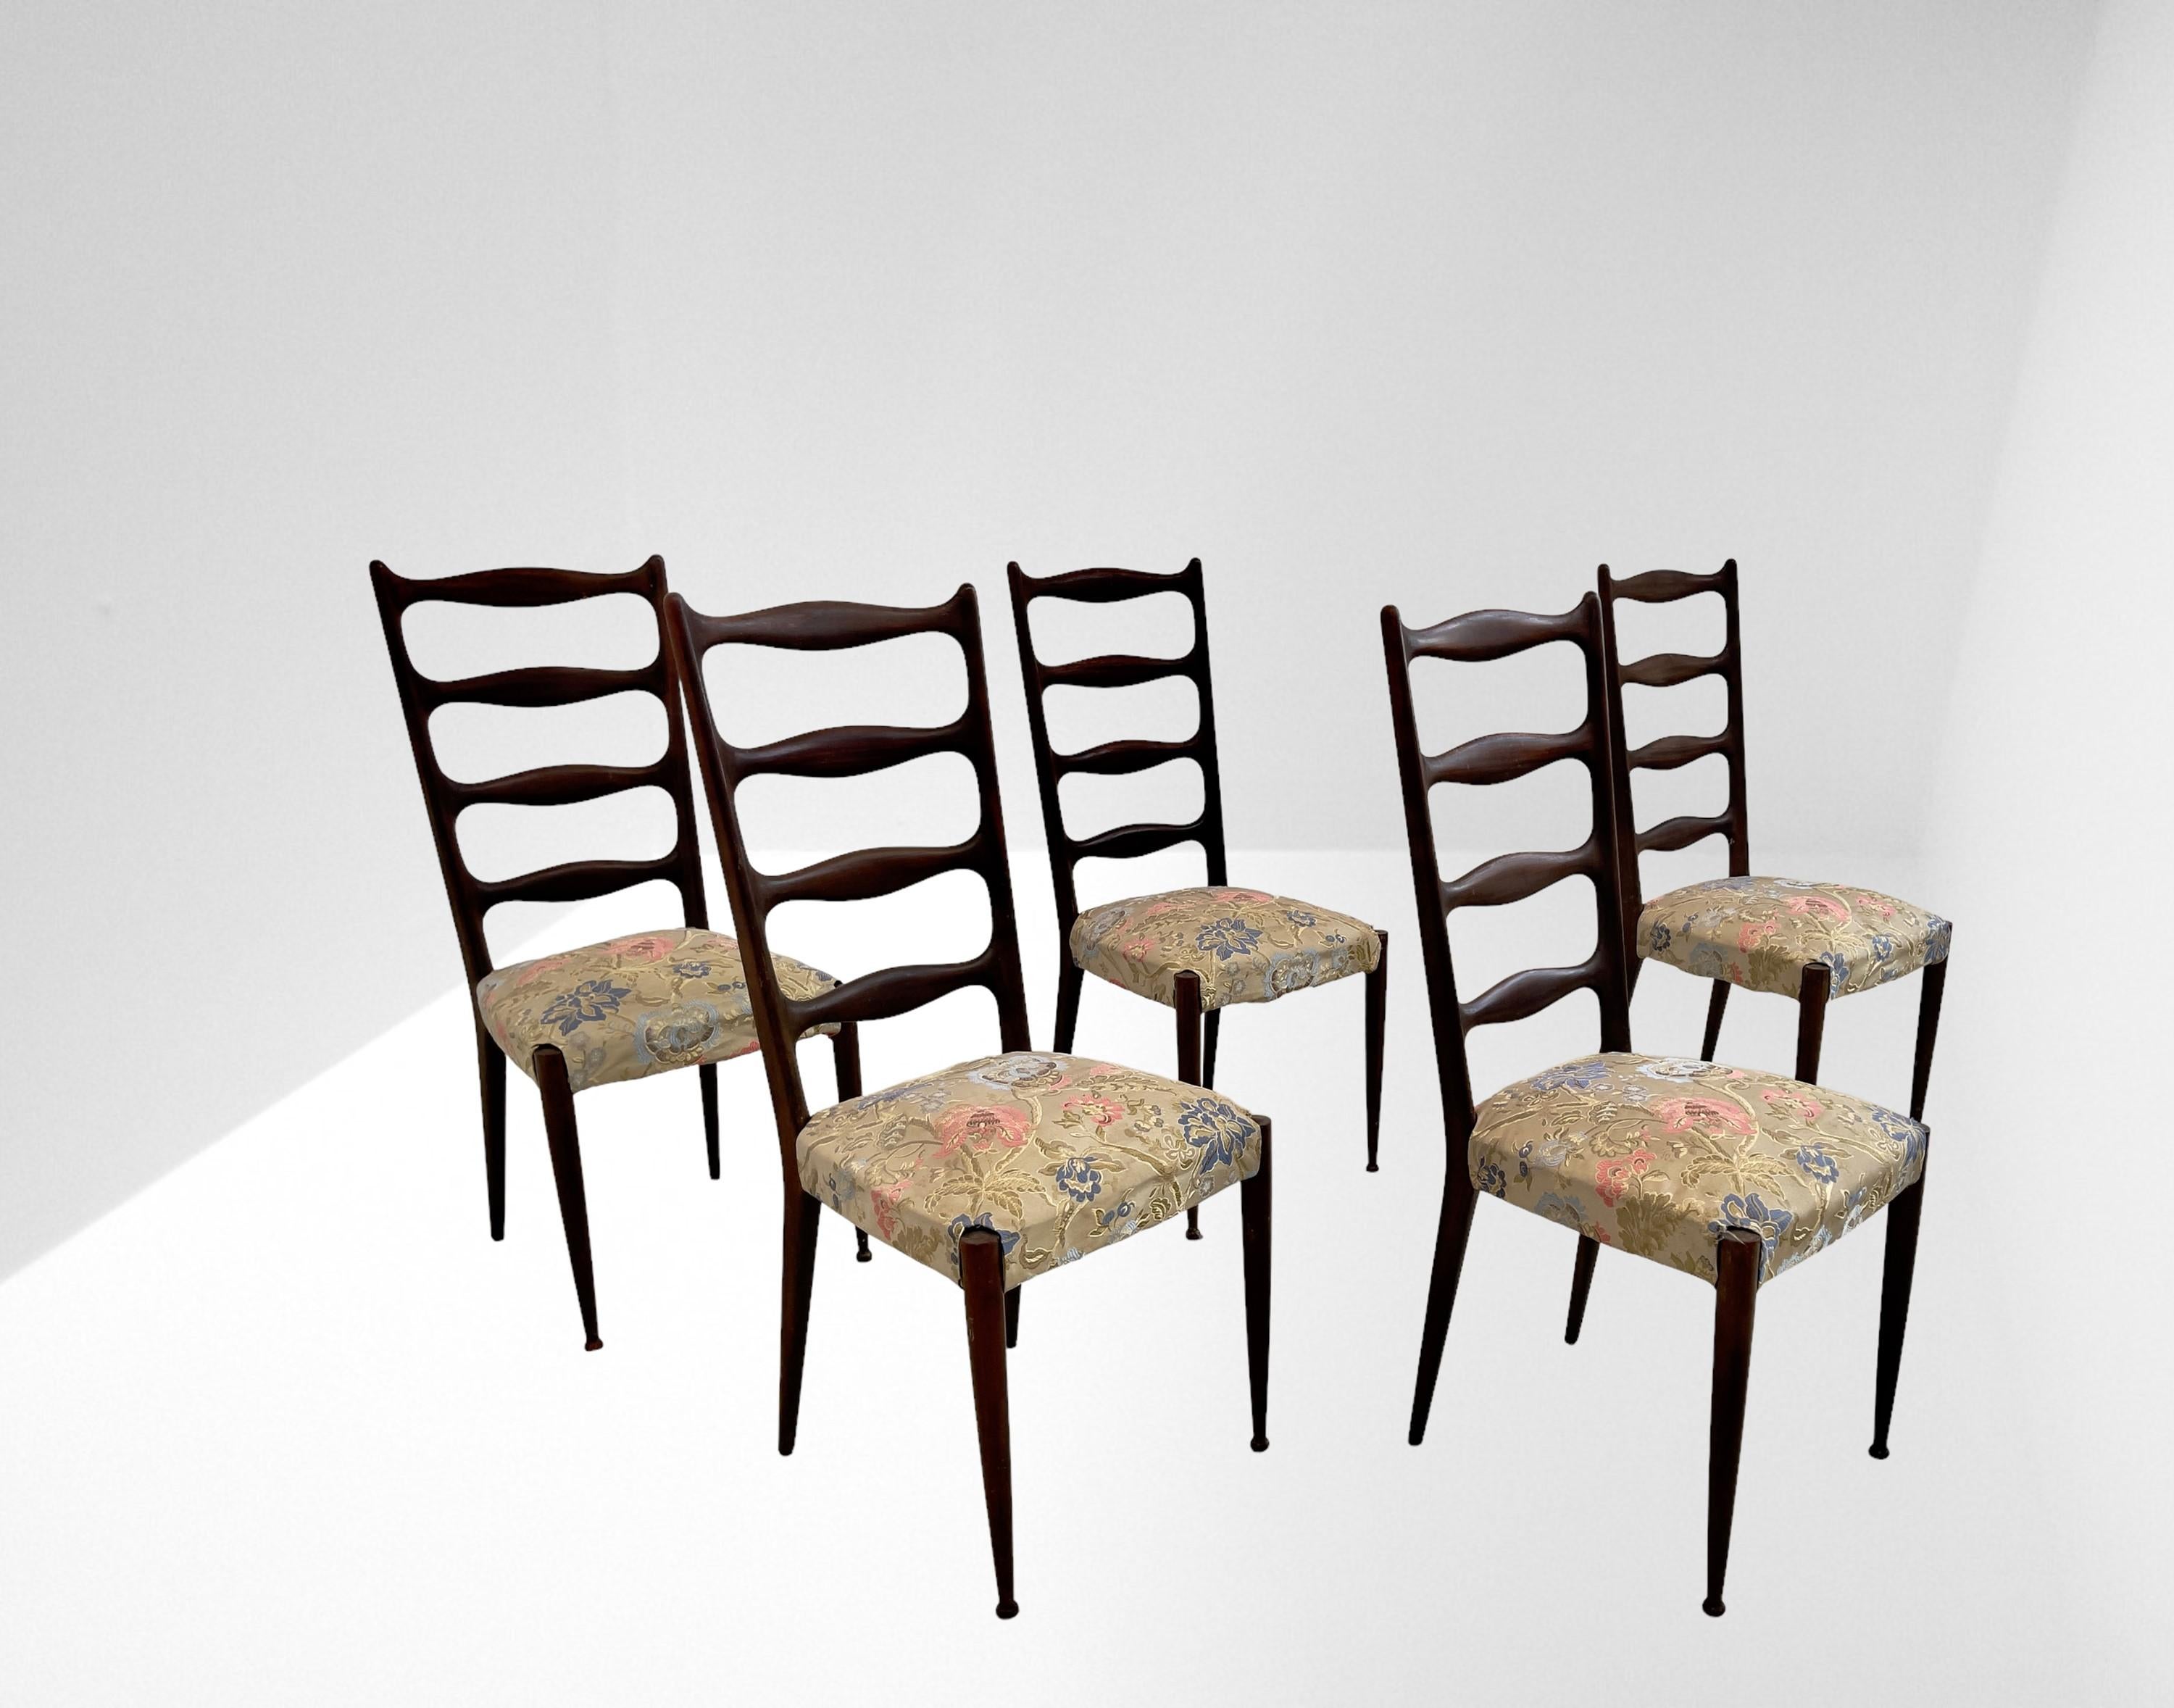 Superbe ensemble de cinq chaises de Paolo Buffa en acajou et tissu rembourré. Fabrication italienne. 1950s.